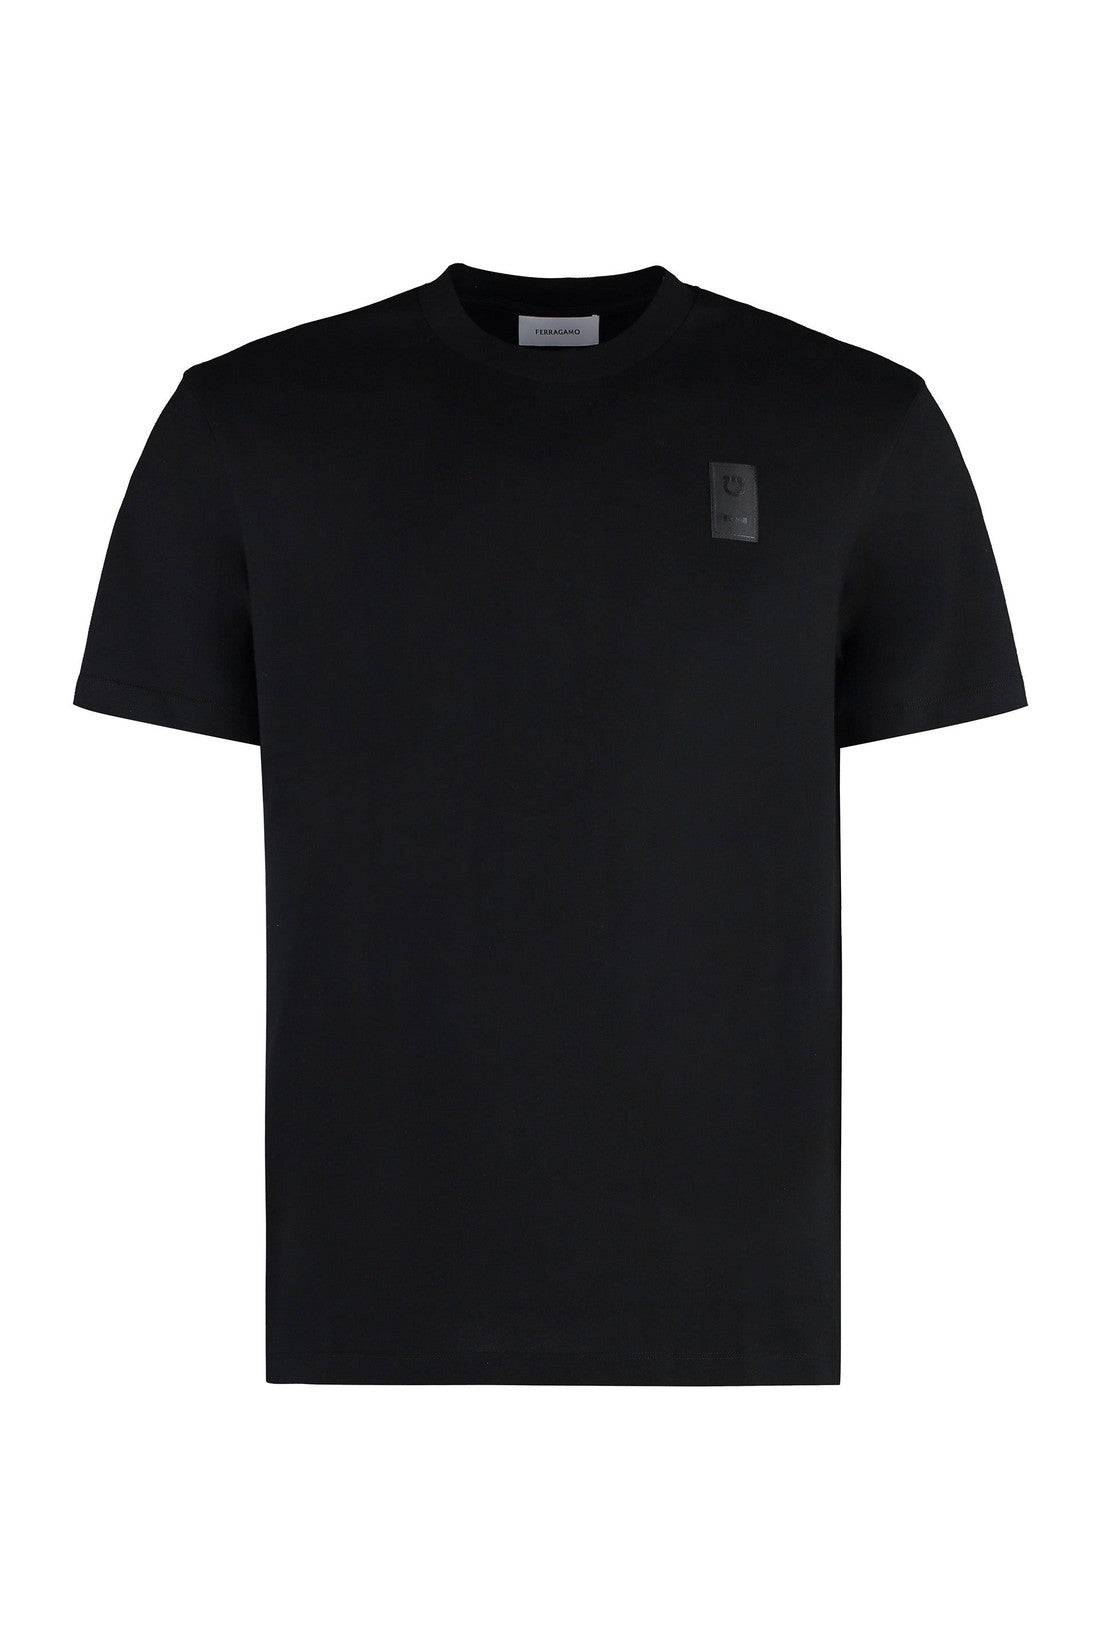 FERRAGAMO-OUTLET-SALE-Cotton crew-neck T-shirt-ARCHIVIST